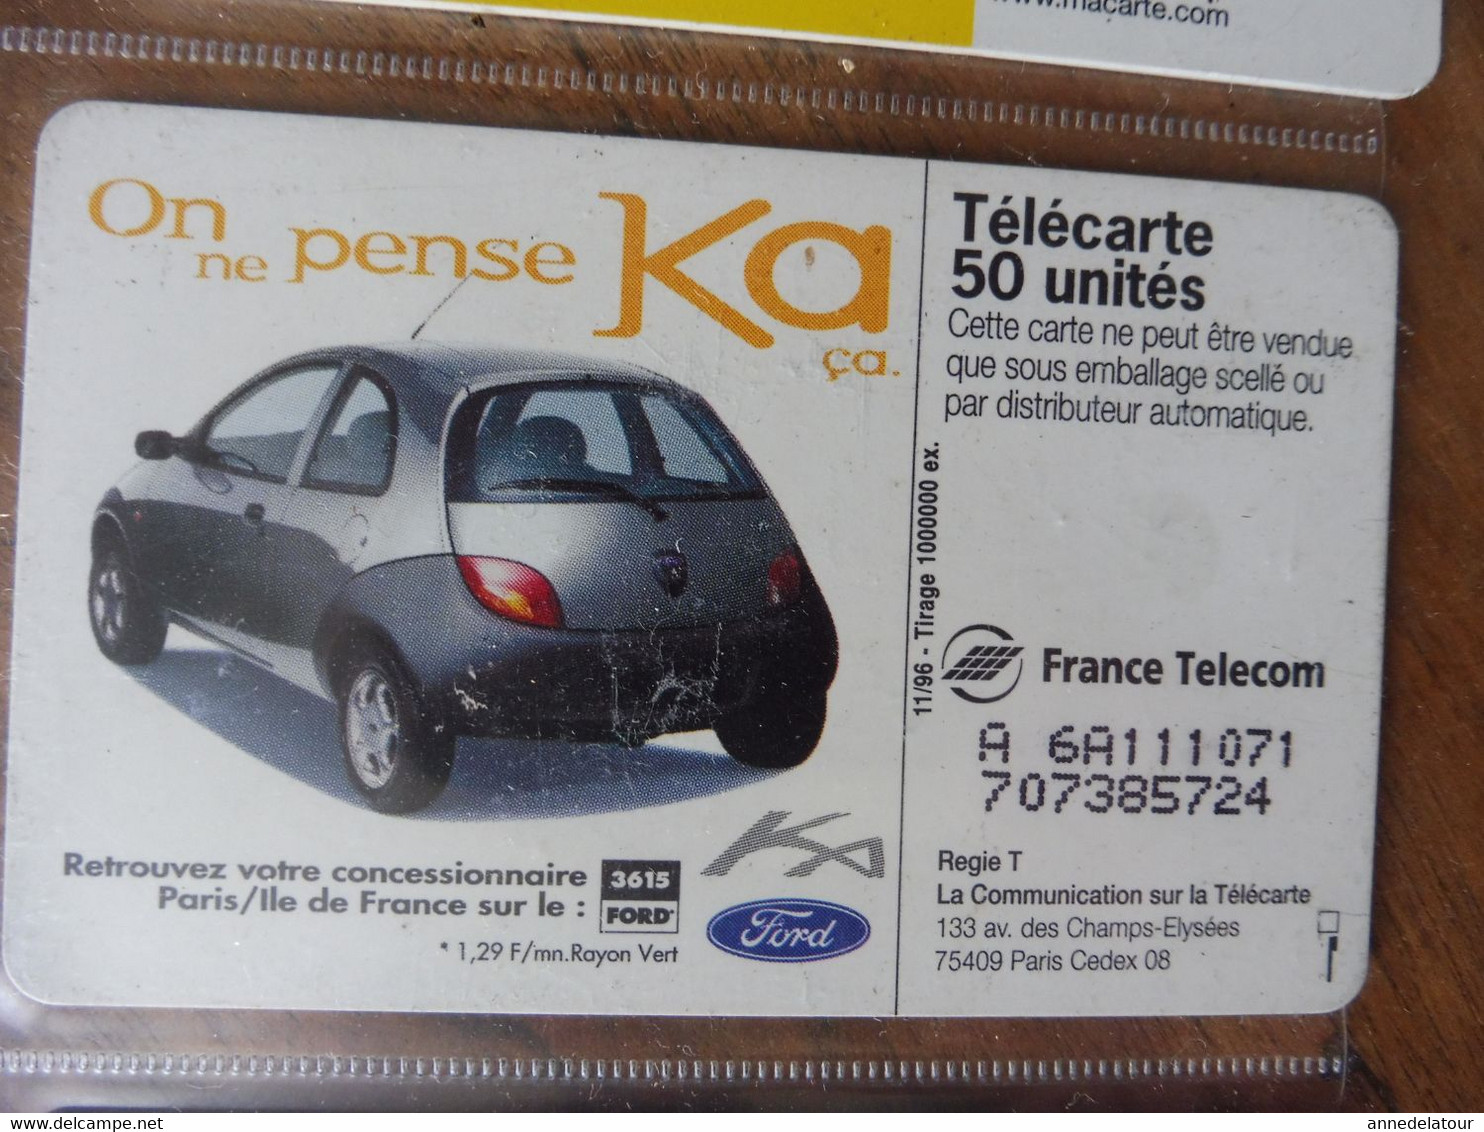 10 télécartes (sur l'automobile) FRANCE TELECOM  Fiesta, Ford Ka, Peugeot, Ford, Peugeot Assistance, Renault, Citroën..